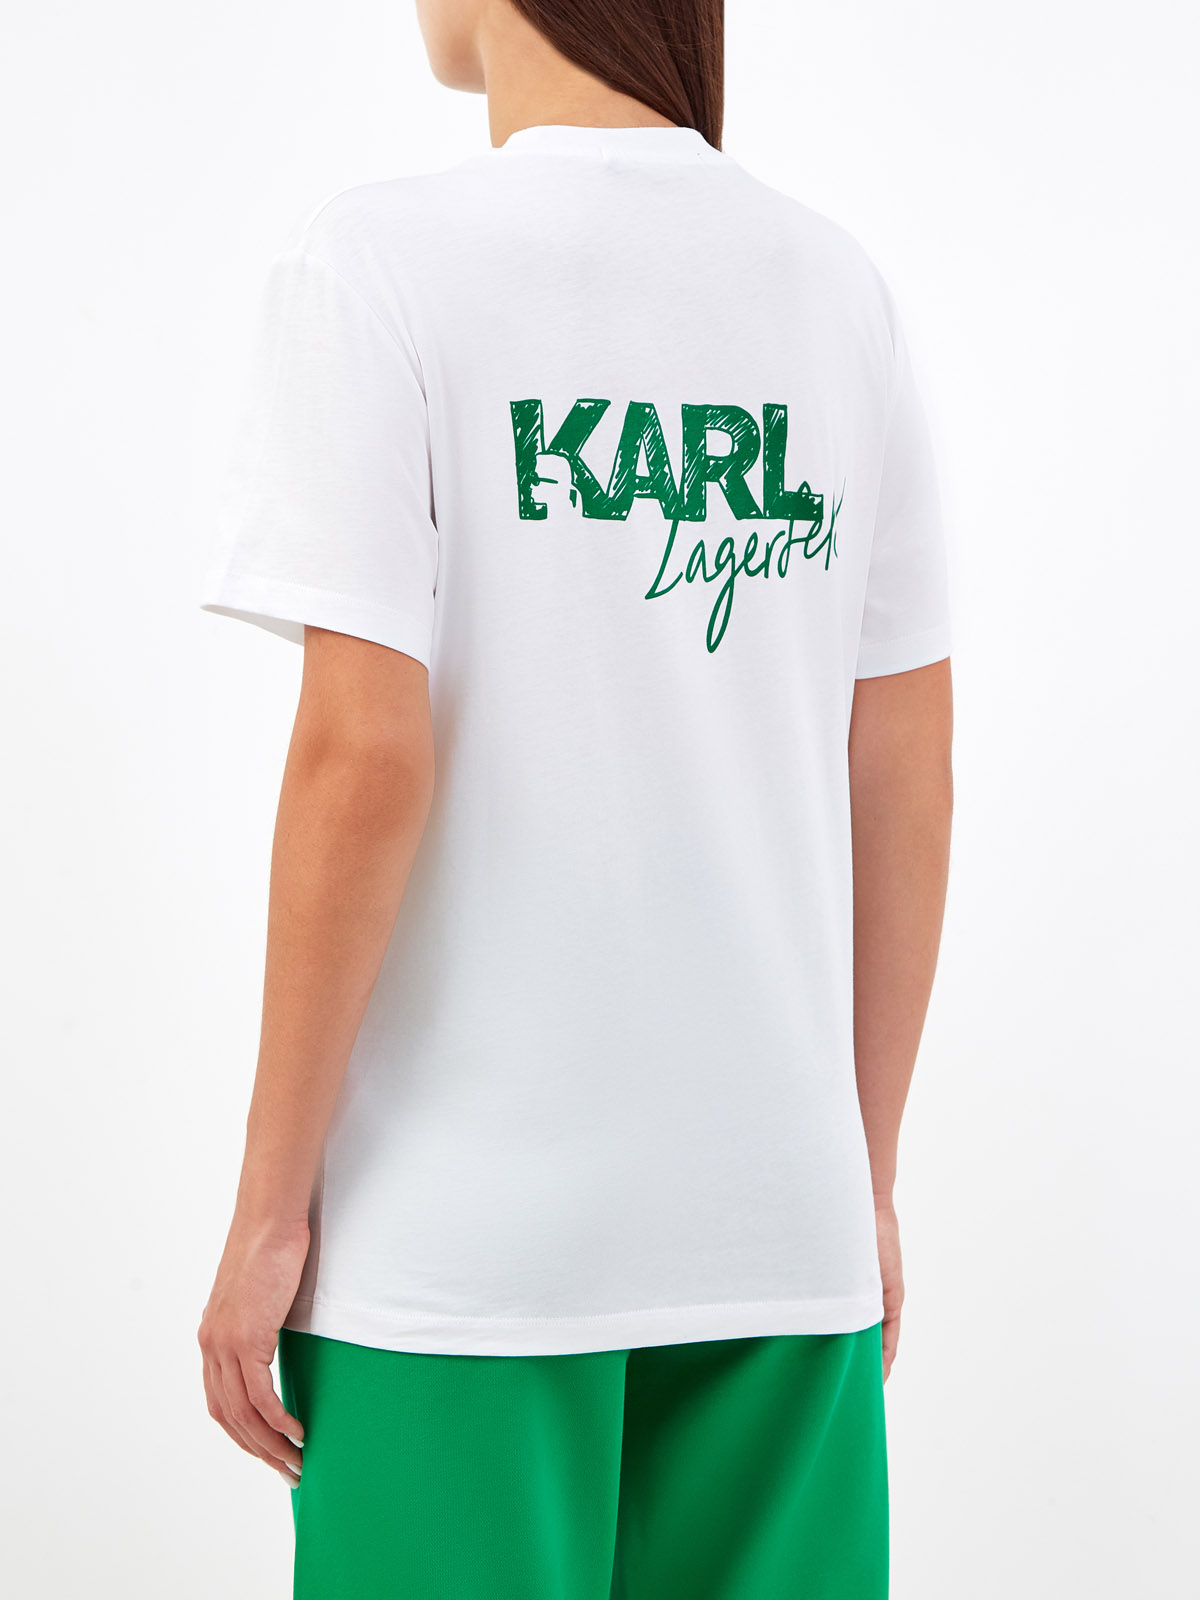 Свободная футболка из хлопка джерси с принтом KARL LAGERFELD, цвет белый, размер XS;S;M;L;XL - фото 4